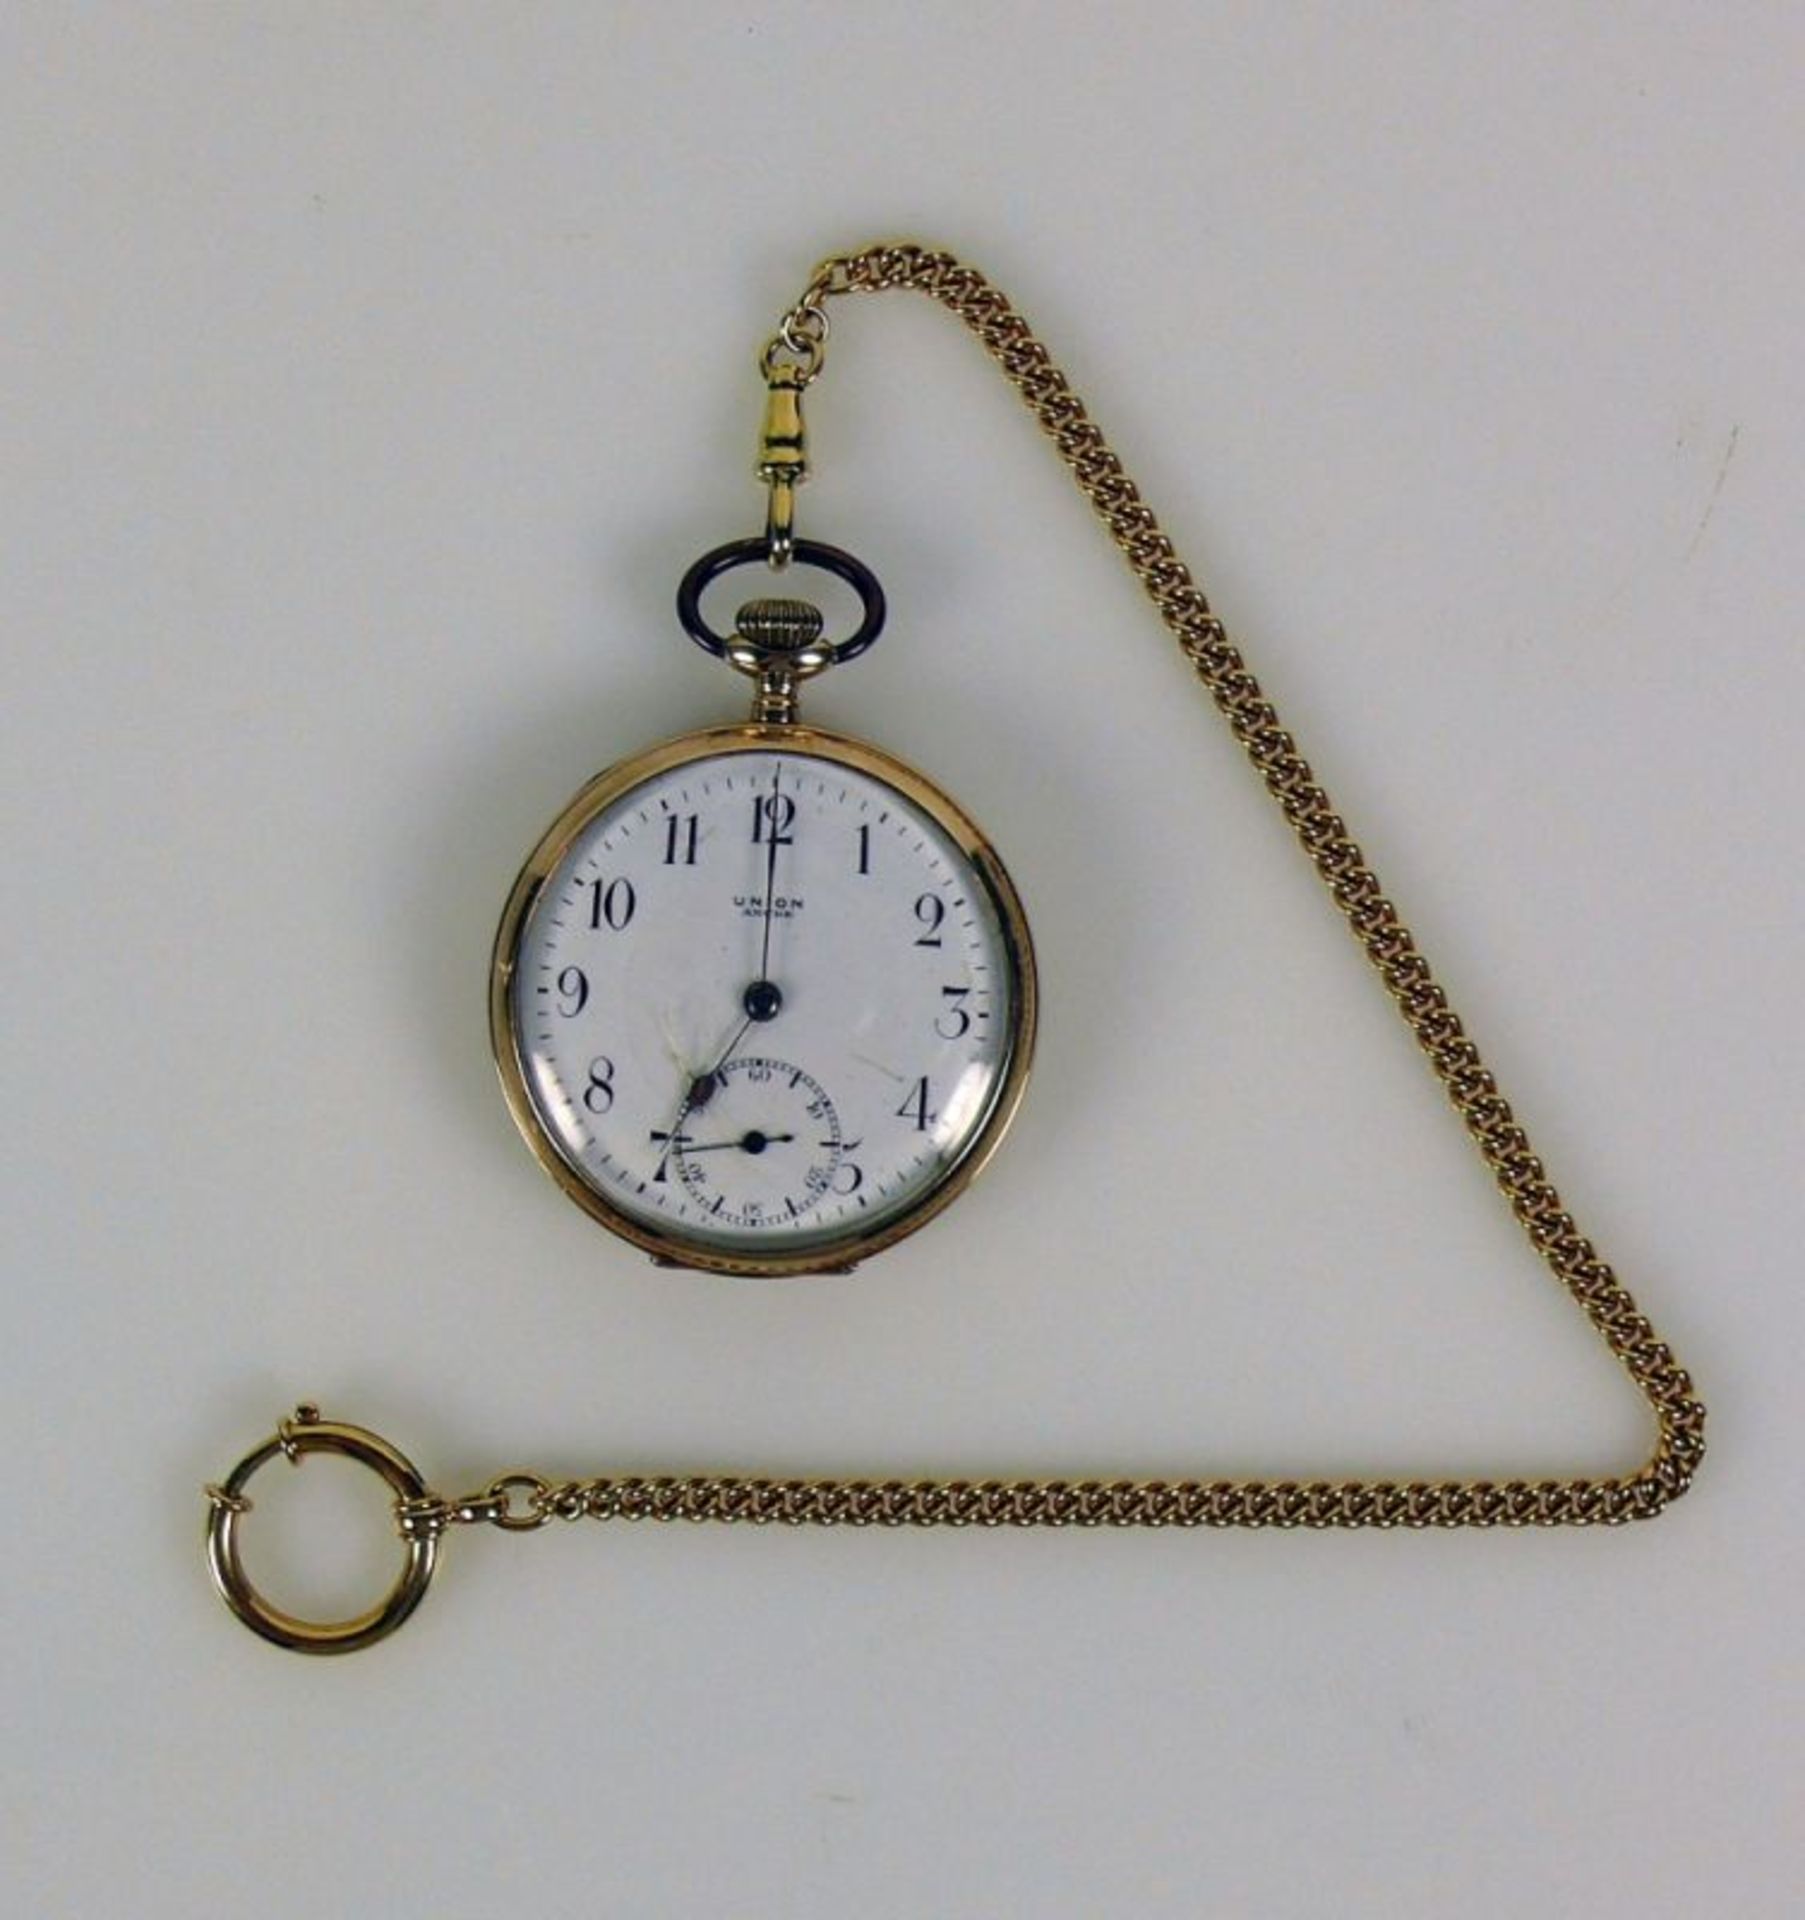 Taschenuhr mit Uhrenkette; jeweils 14ct GG; Werk und Ziffernblatt sign: UNION; Emailziffernblatt mit